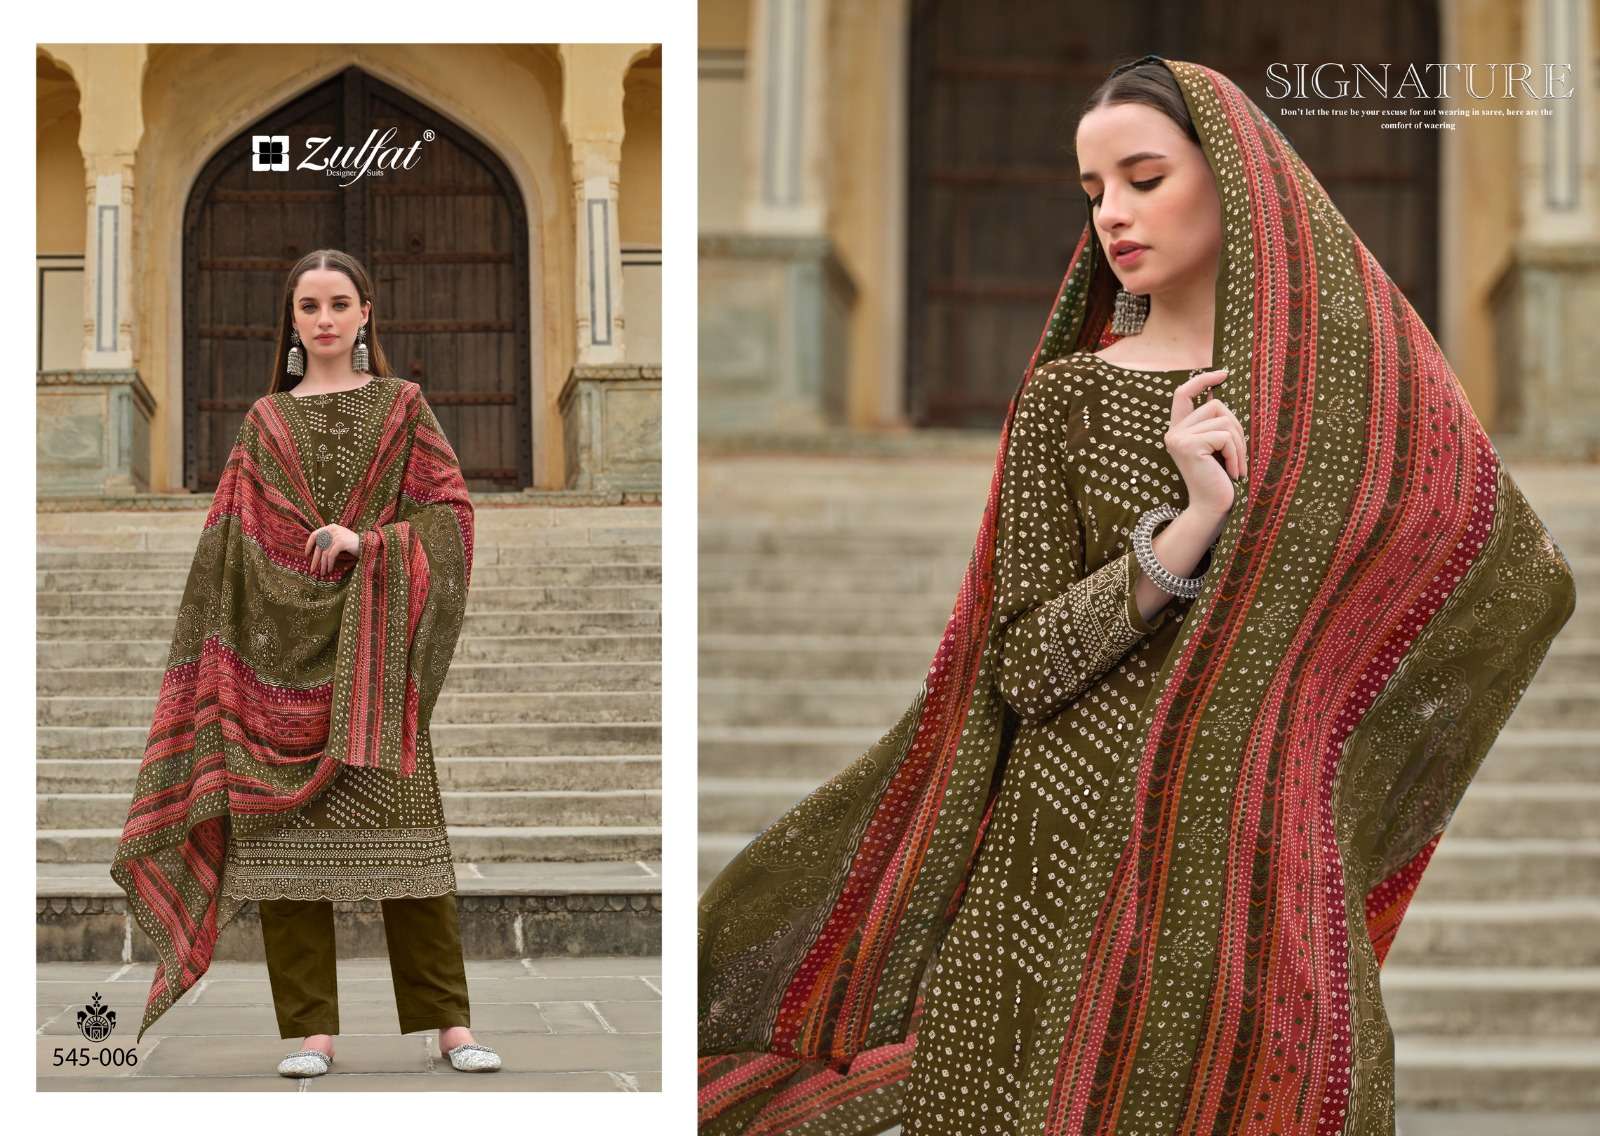 zulfat designer suits tania cotton decent look salwar suit catalog